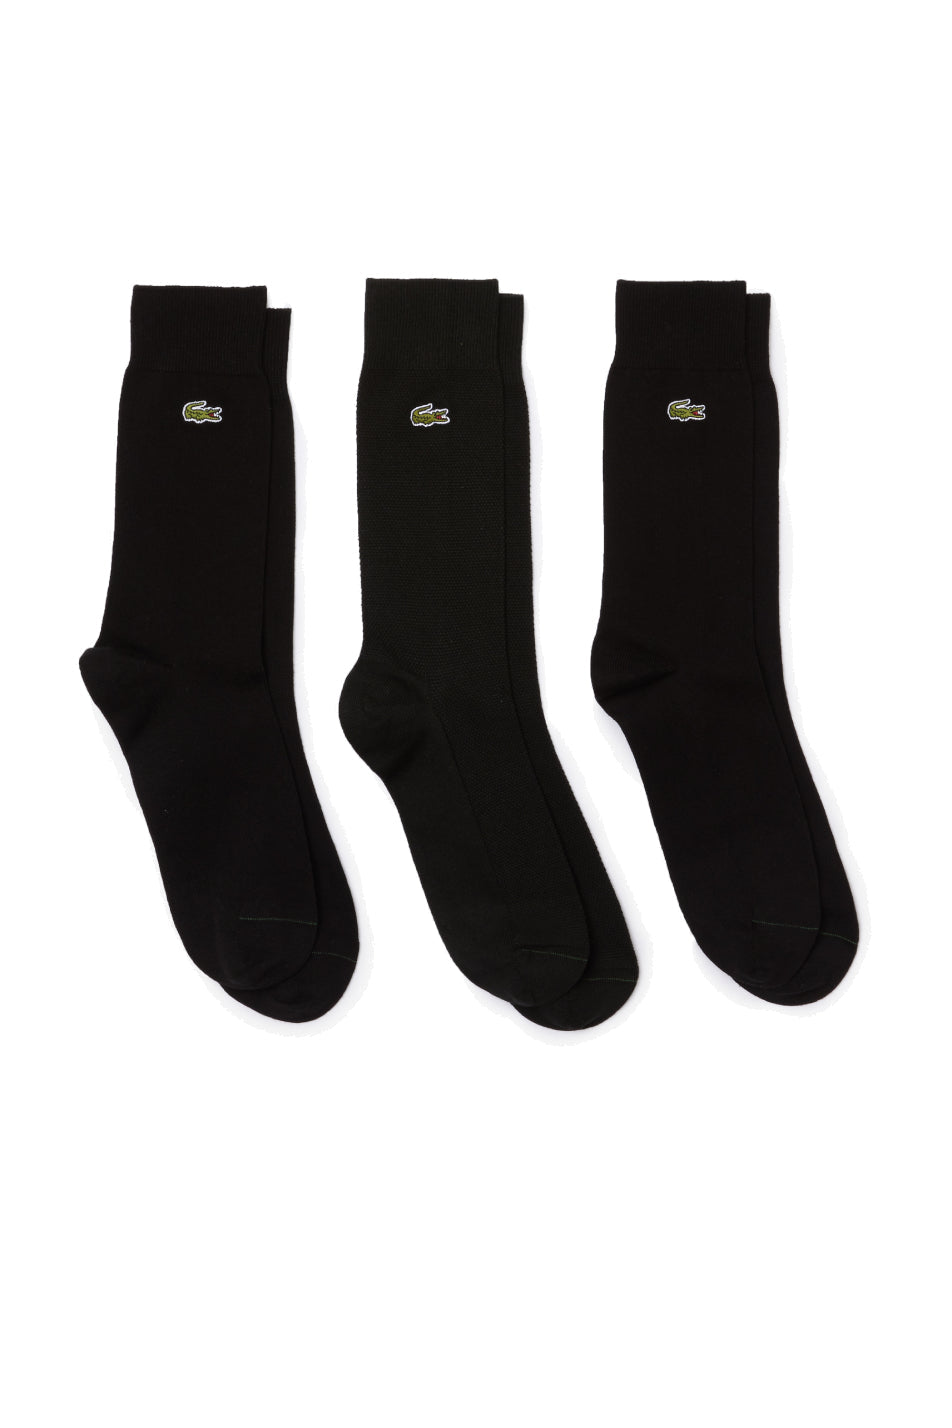 Lacoste 3 Pack Unisex High-Cut Cotton Piqué Socks